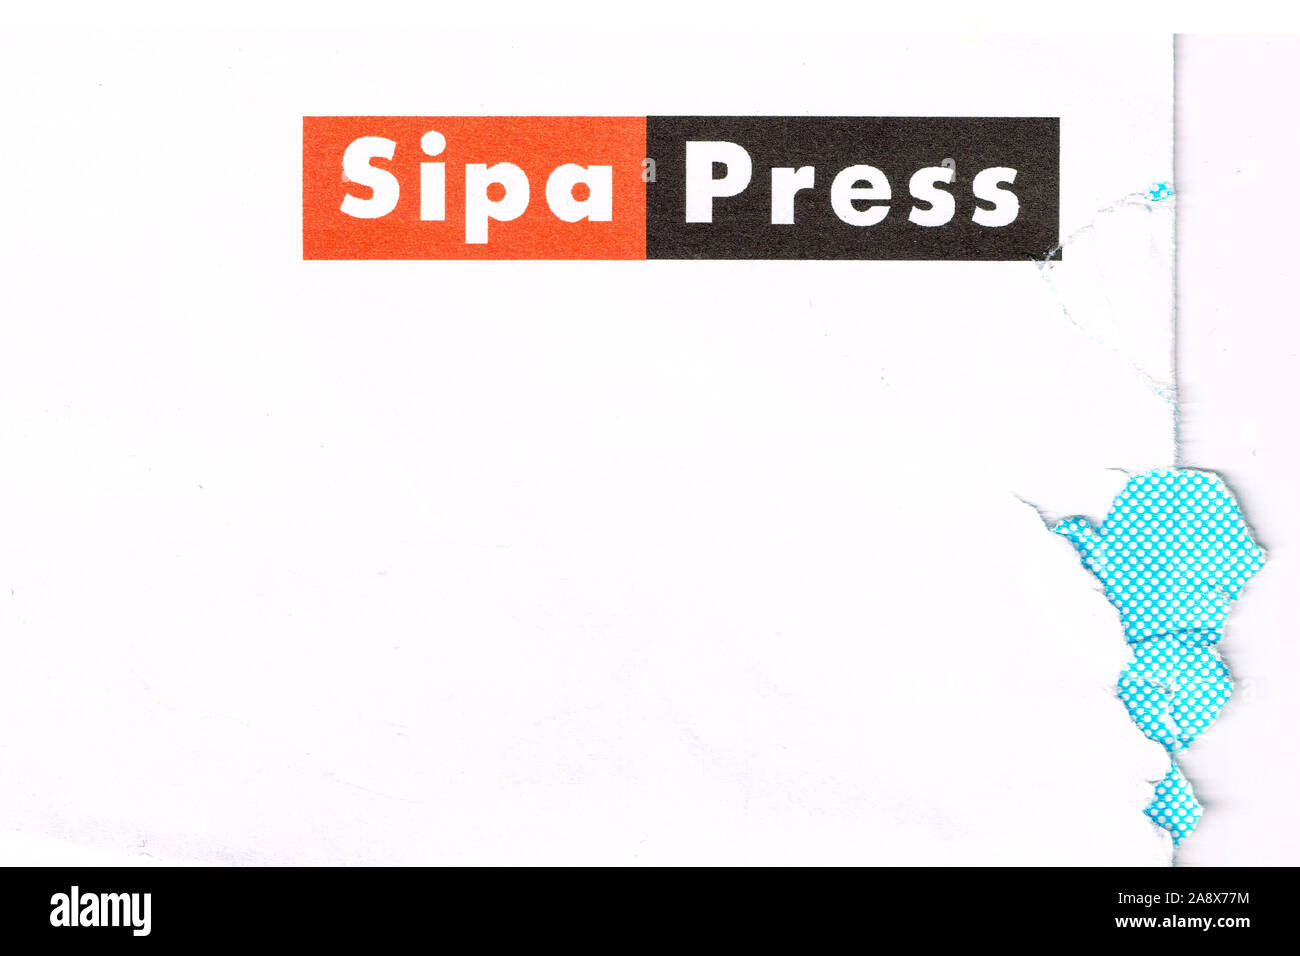 Sipa Press, französische Presse fotografie Agentur, Frankreich Stockfoto